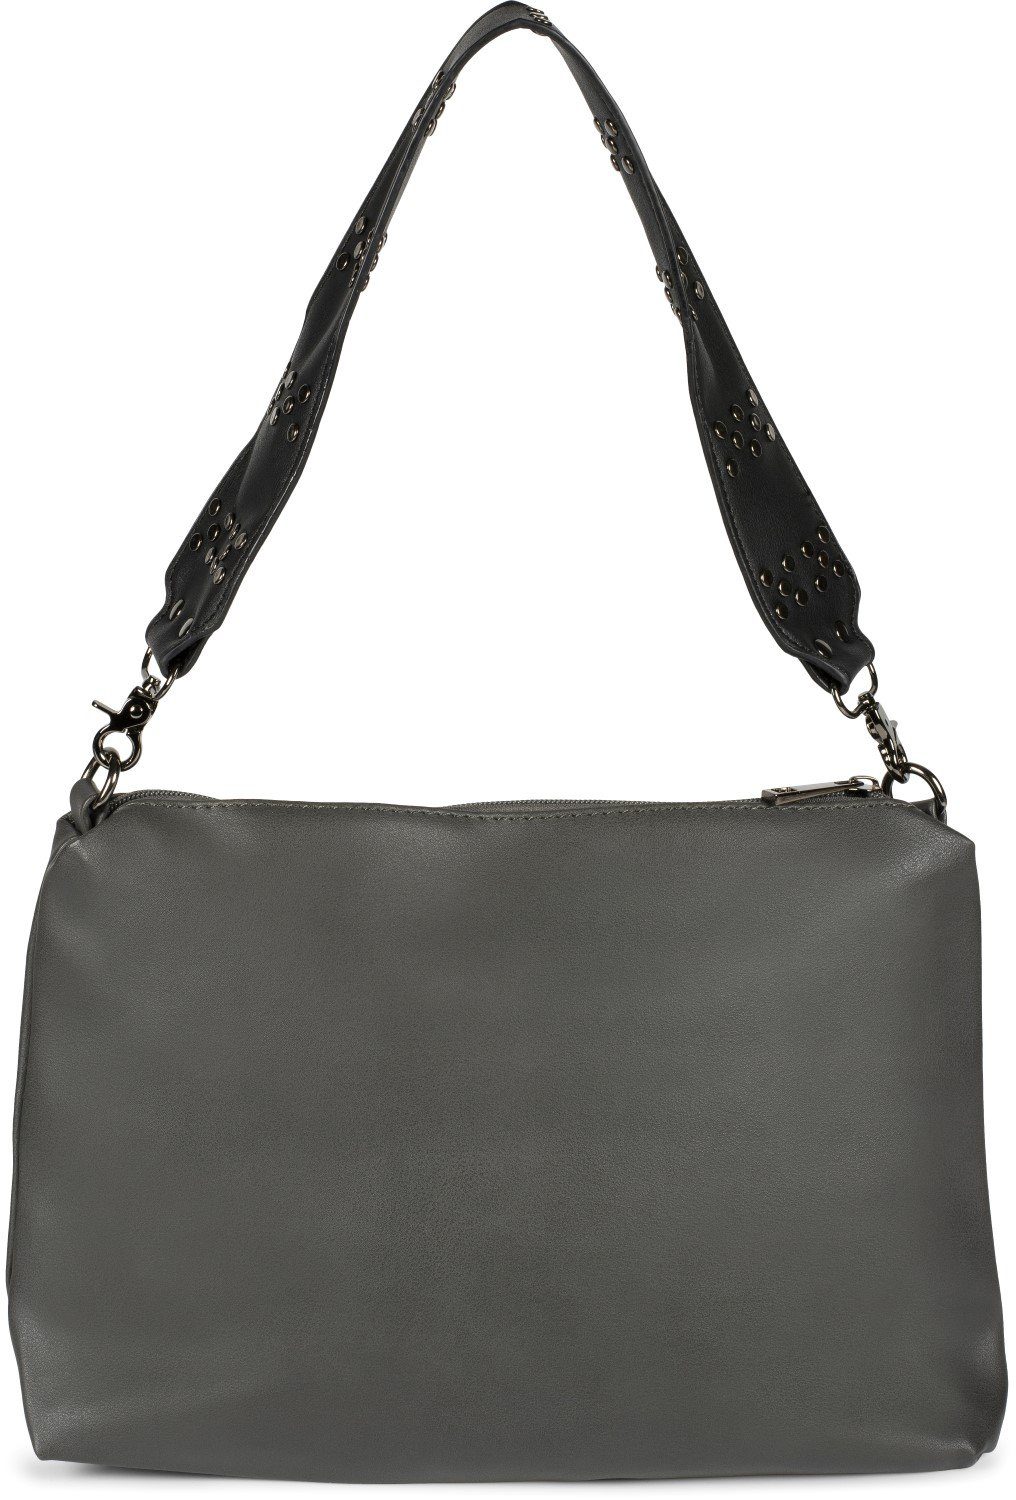 Damen Handtaschen styleBREAKER Hobo, 2 in 1 Schultertasche mit Nietengurt und Innentasche